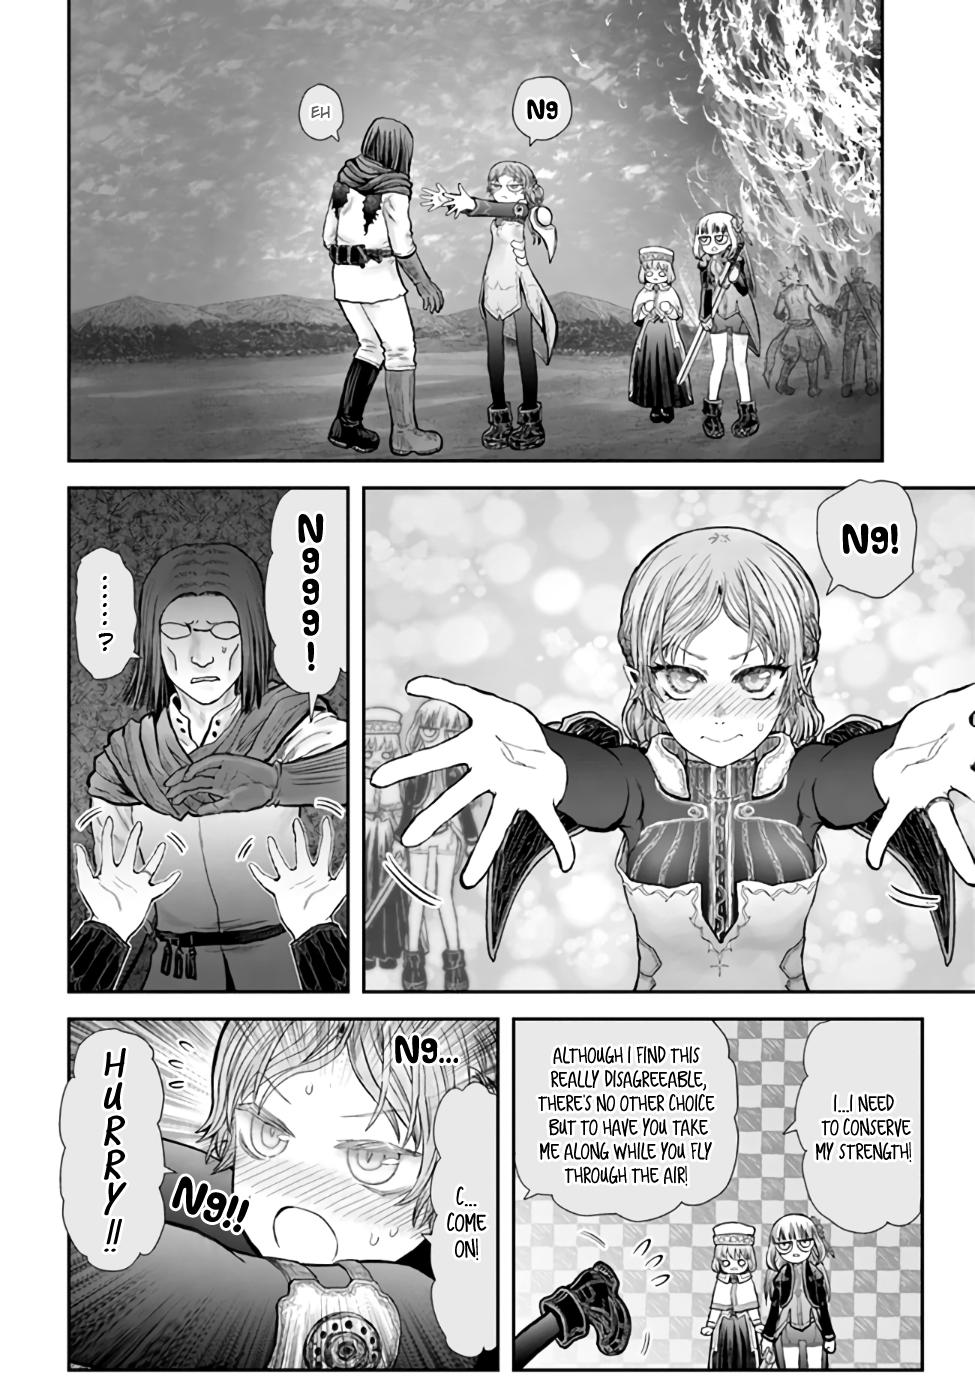 Isekai Ojisan, Chapter 32 - Isekai Ojisan Manga Online